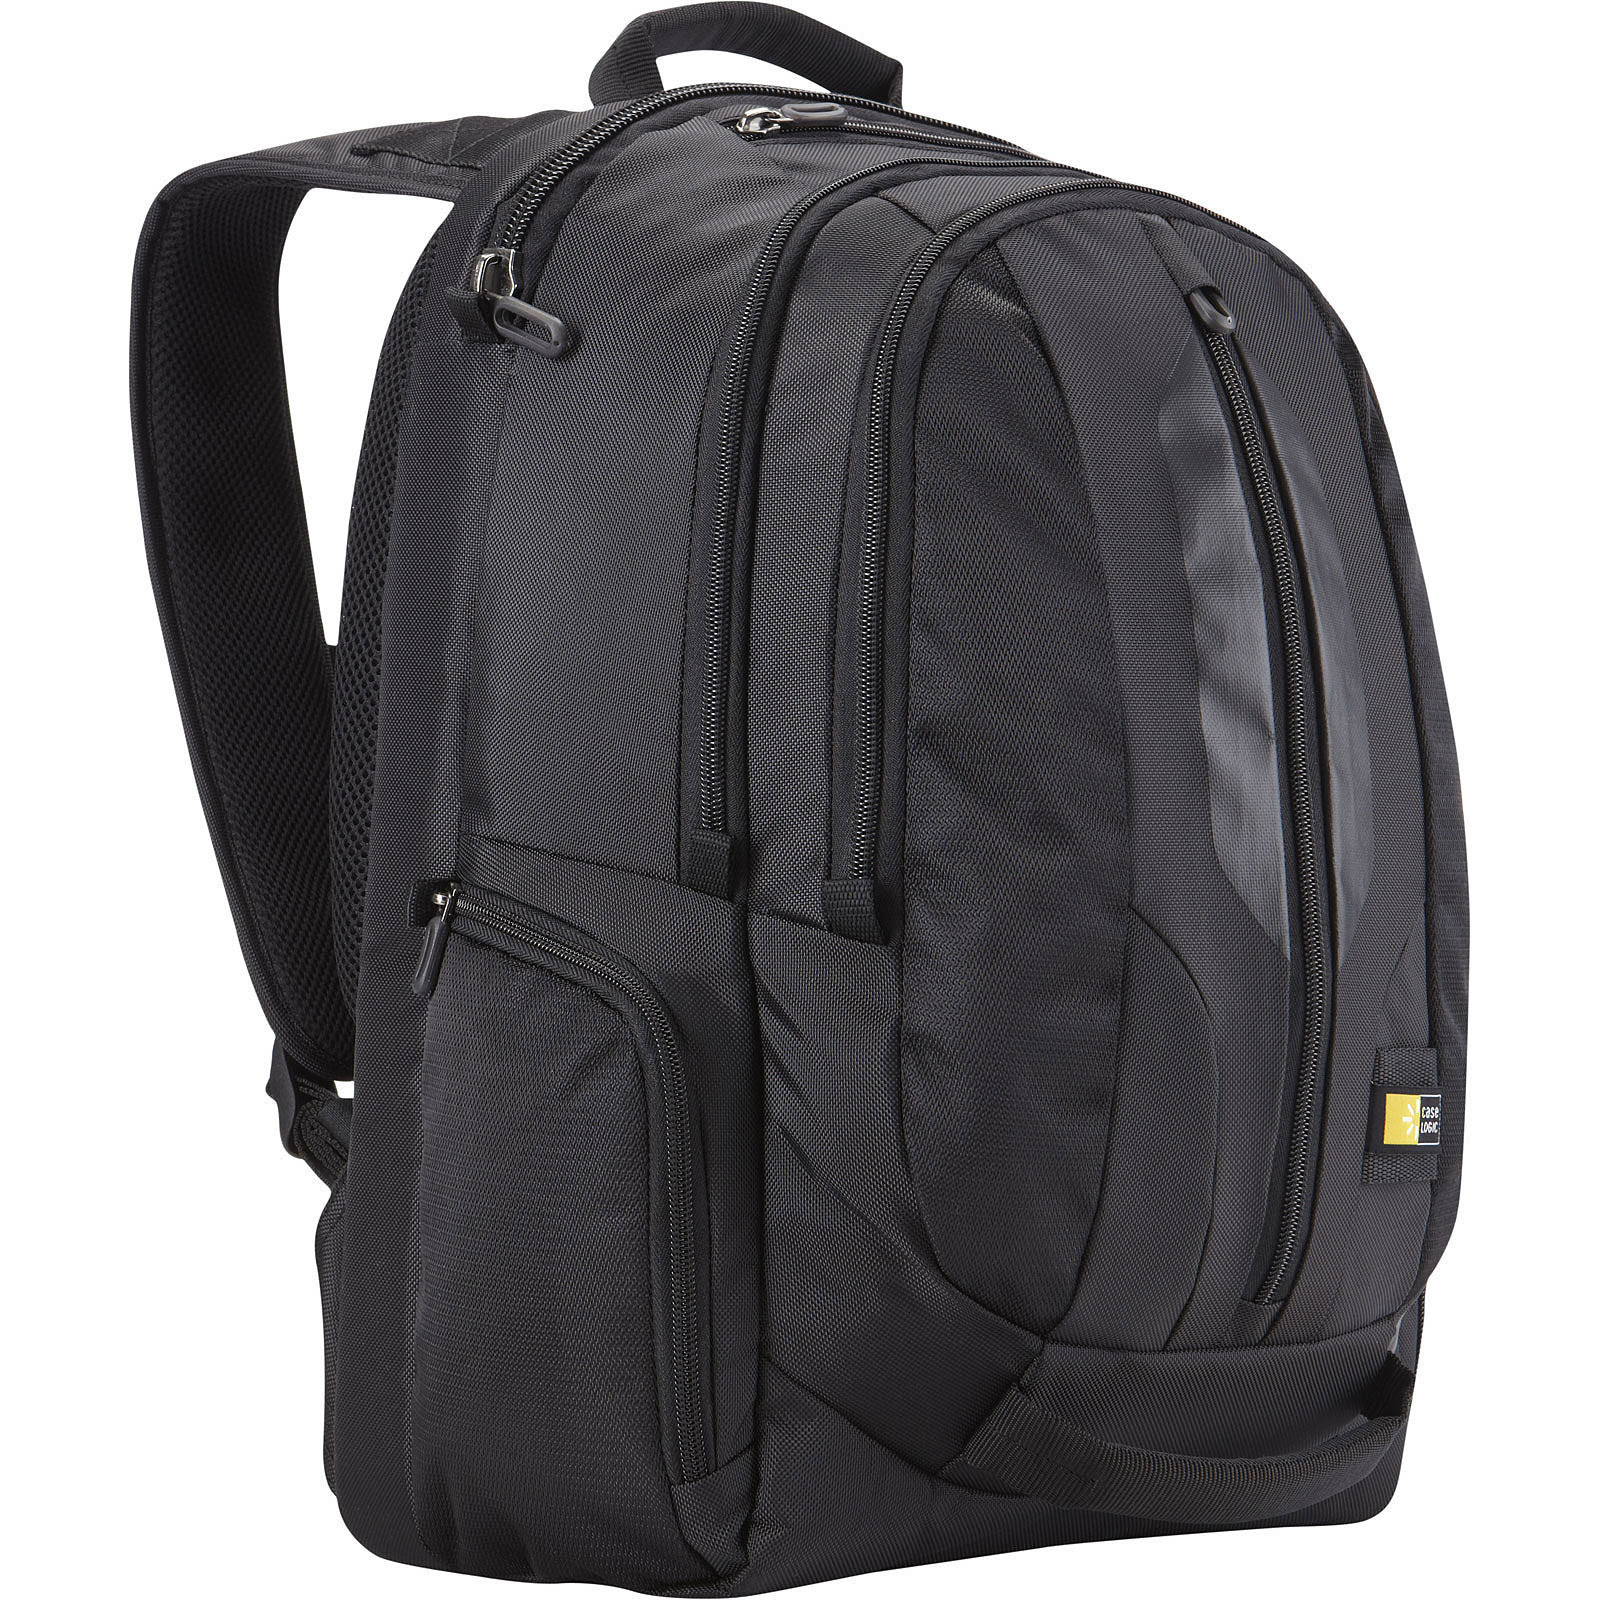 17.3" Laptop Backpack RBP217 - Achat / Vente sur grosbill-pro.com - 0